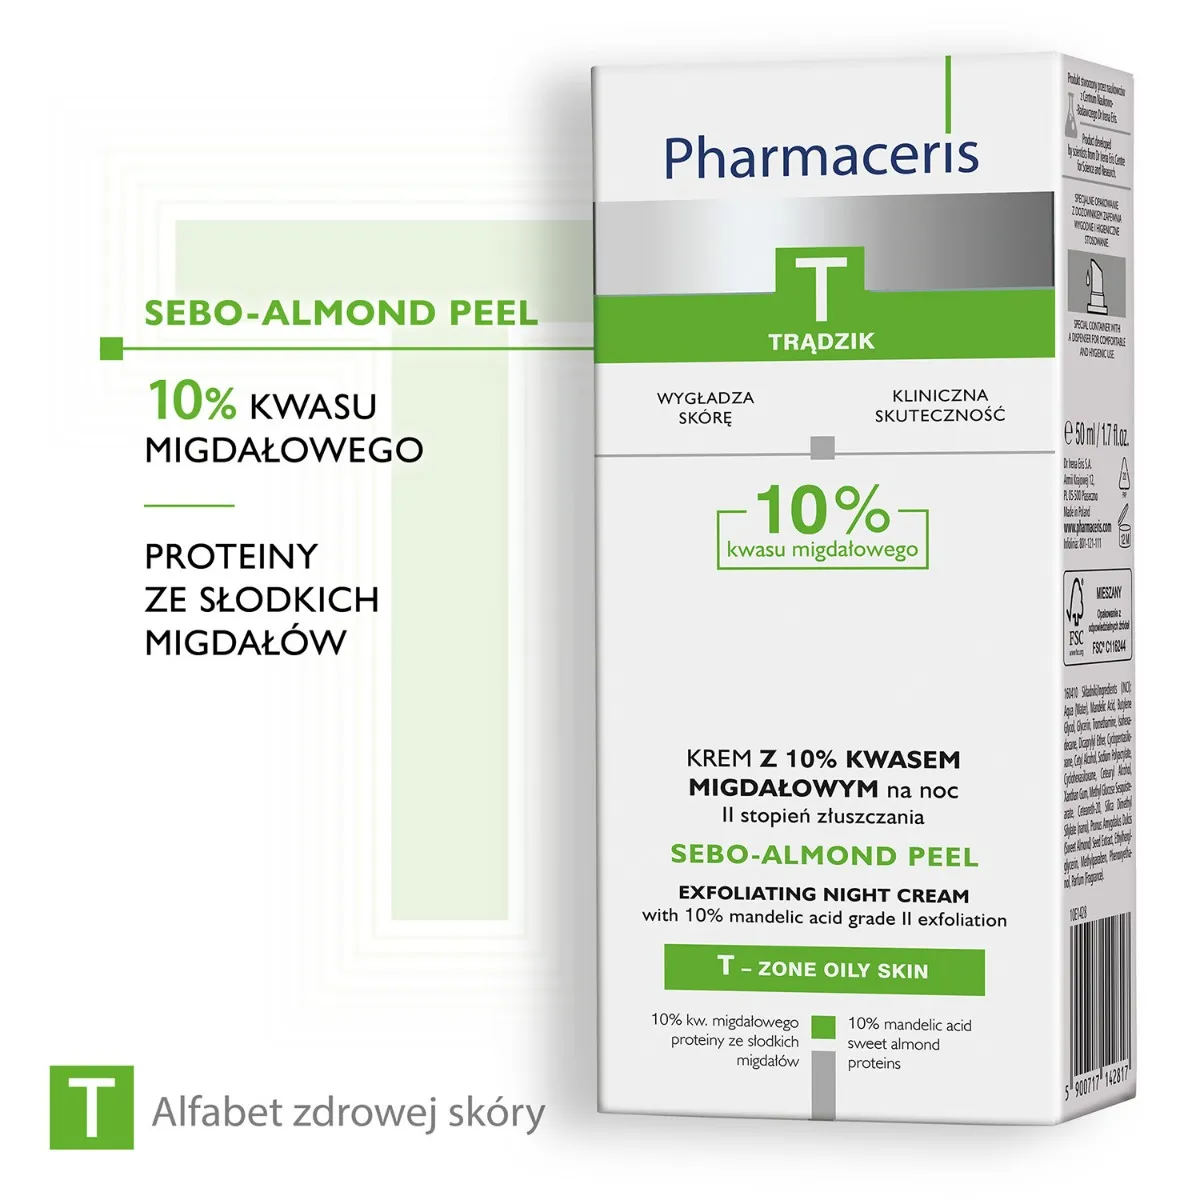 Pharmaceris T Sebo-Almond Peel, krem z 10% kwasem migdałowym na noc, II stopień złuszczenia, 50 ml 